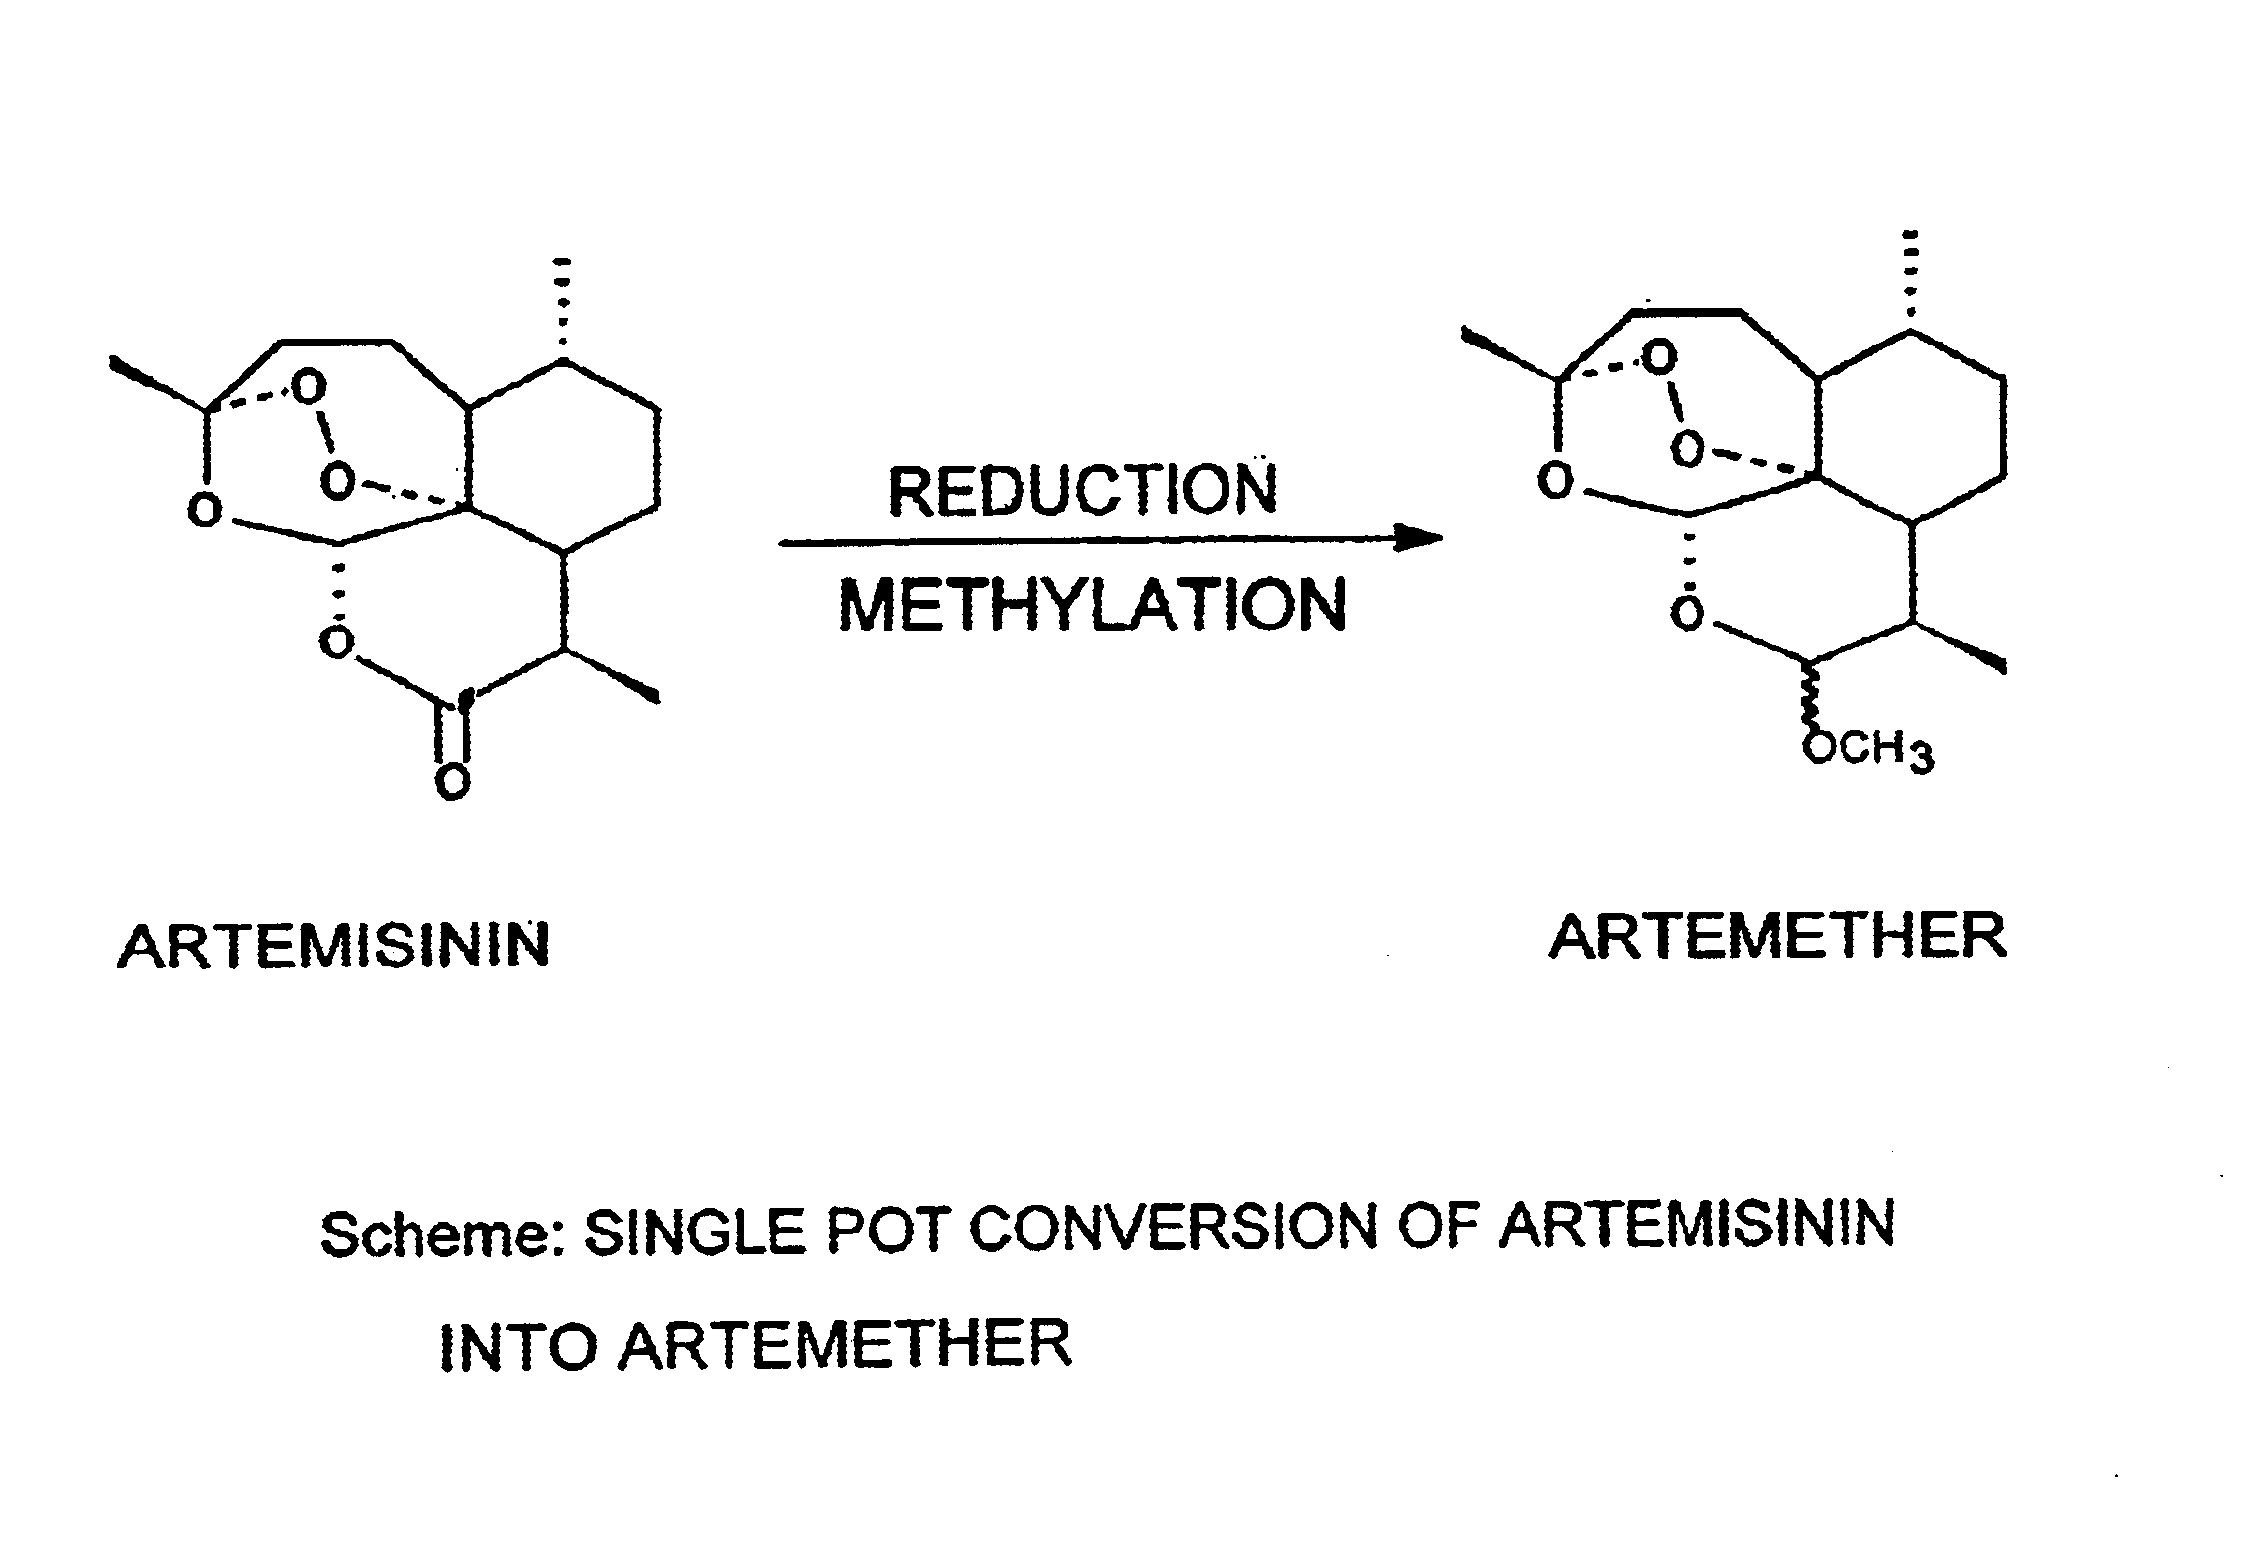 Single pot conversion of artemisinin into artemether